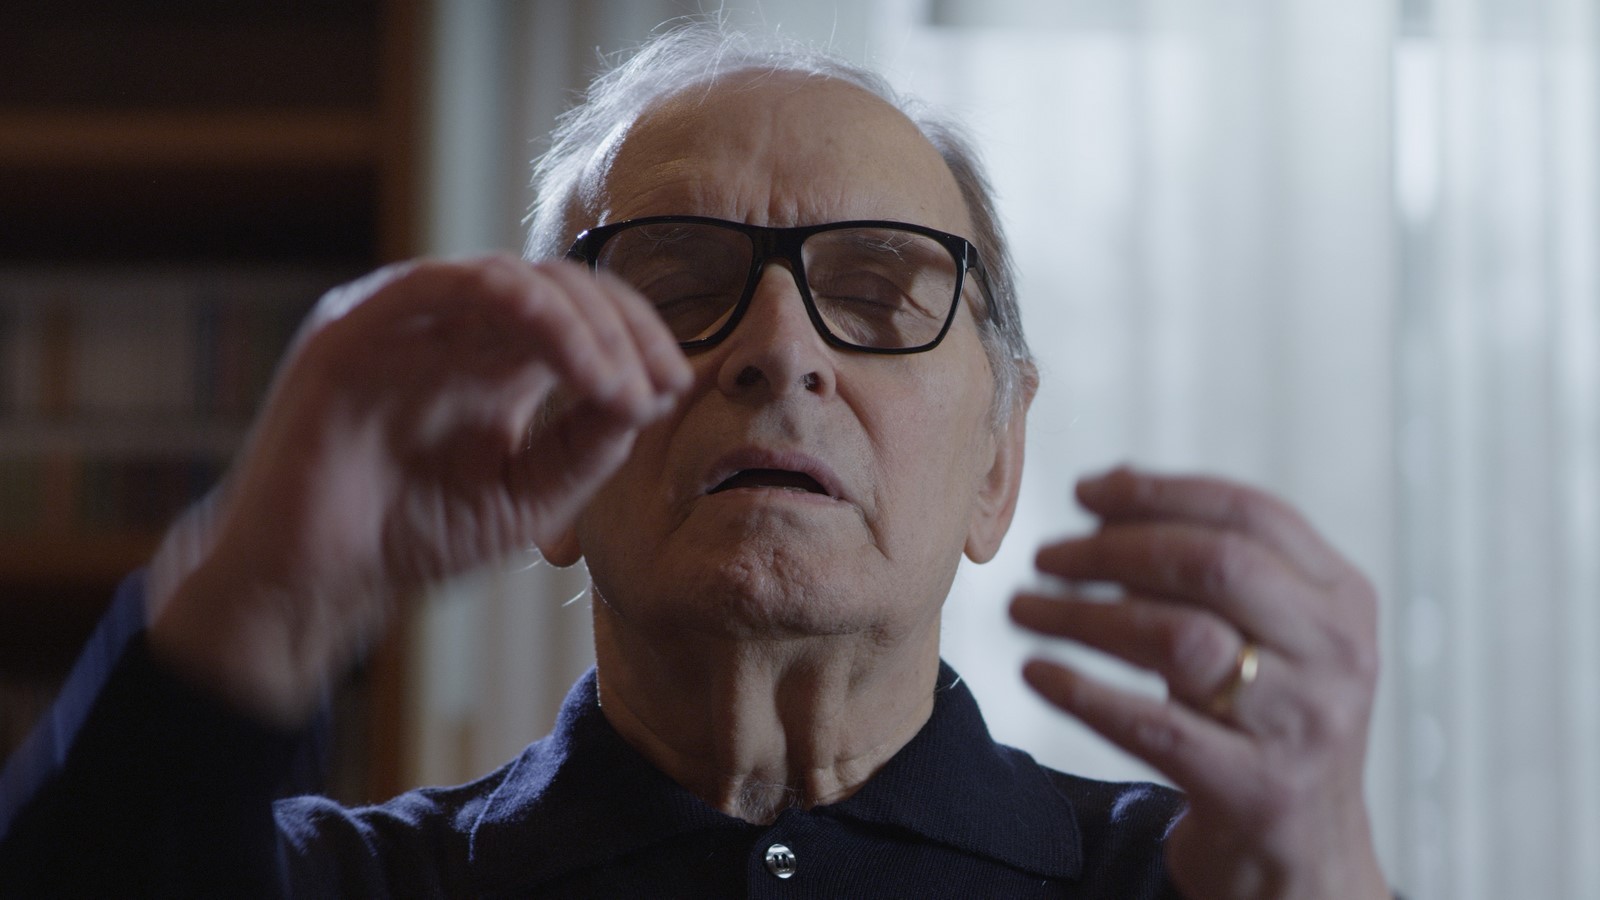 su Rai 1 Ennio, il documentario firmato dal regista Premio Oscar Giuseppe Tornatore sul due volte Premio Oscar Maestro Morricone.